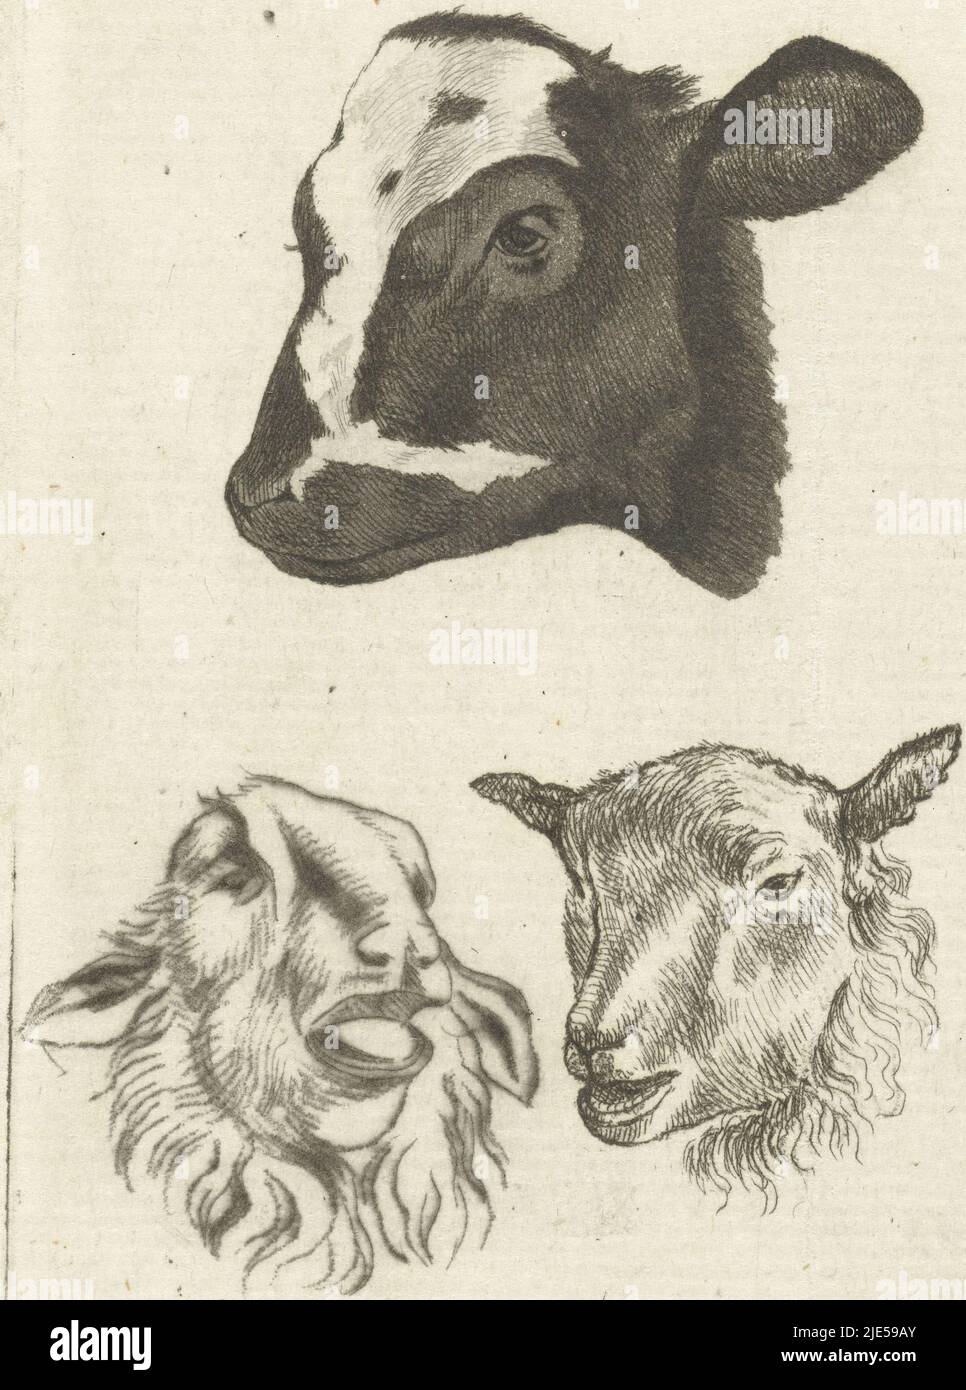 Tête de veau noir et blanc et deux têtes de mouton, imprimerie : Pieter Barbiers (IV), 1808 - 1848, papier, gravure, h 88 mm × l 65 mm Banque D'Images